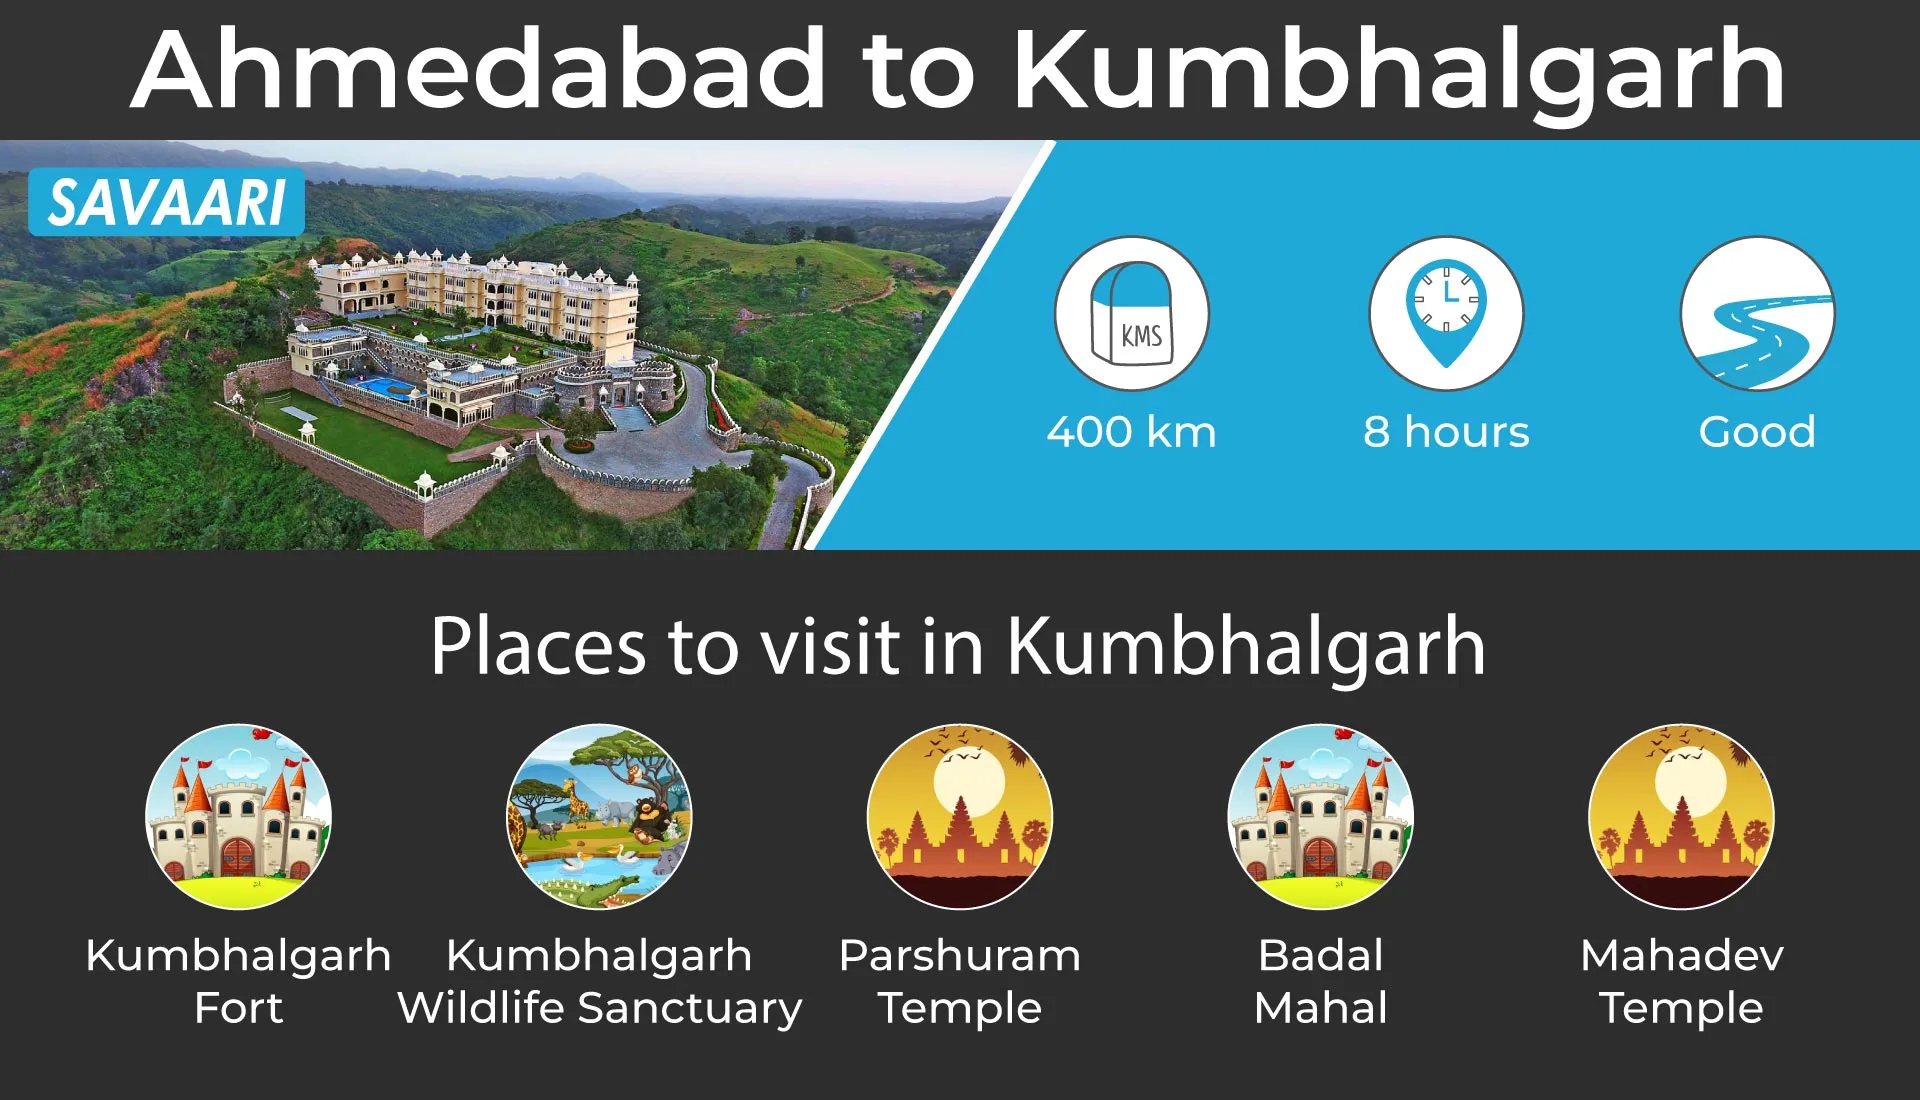 Place to visit near Ahmedabad - Kumbhalgarh 